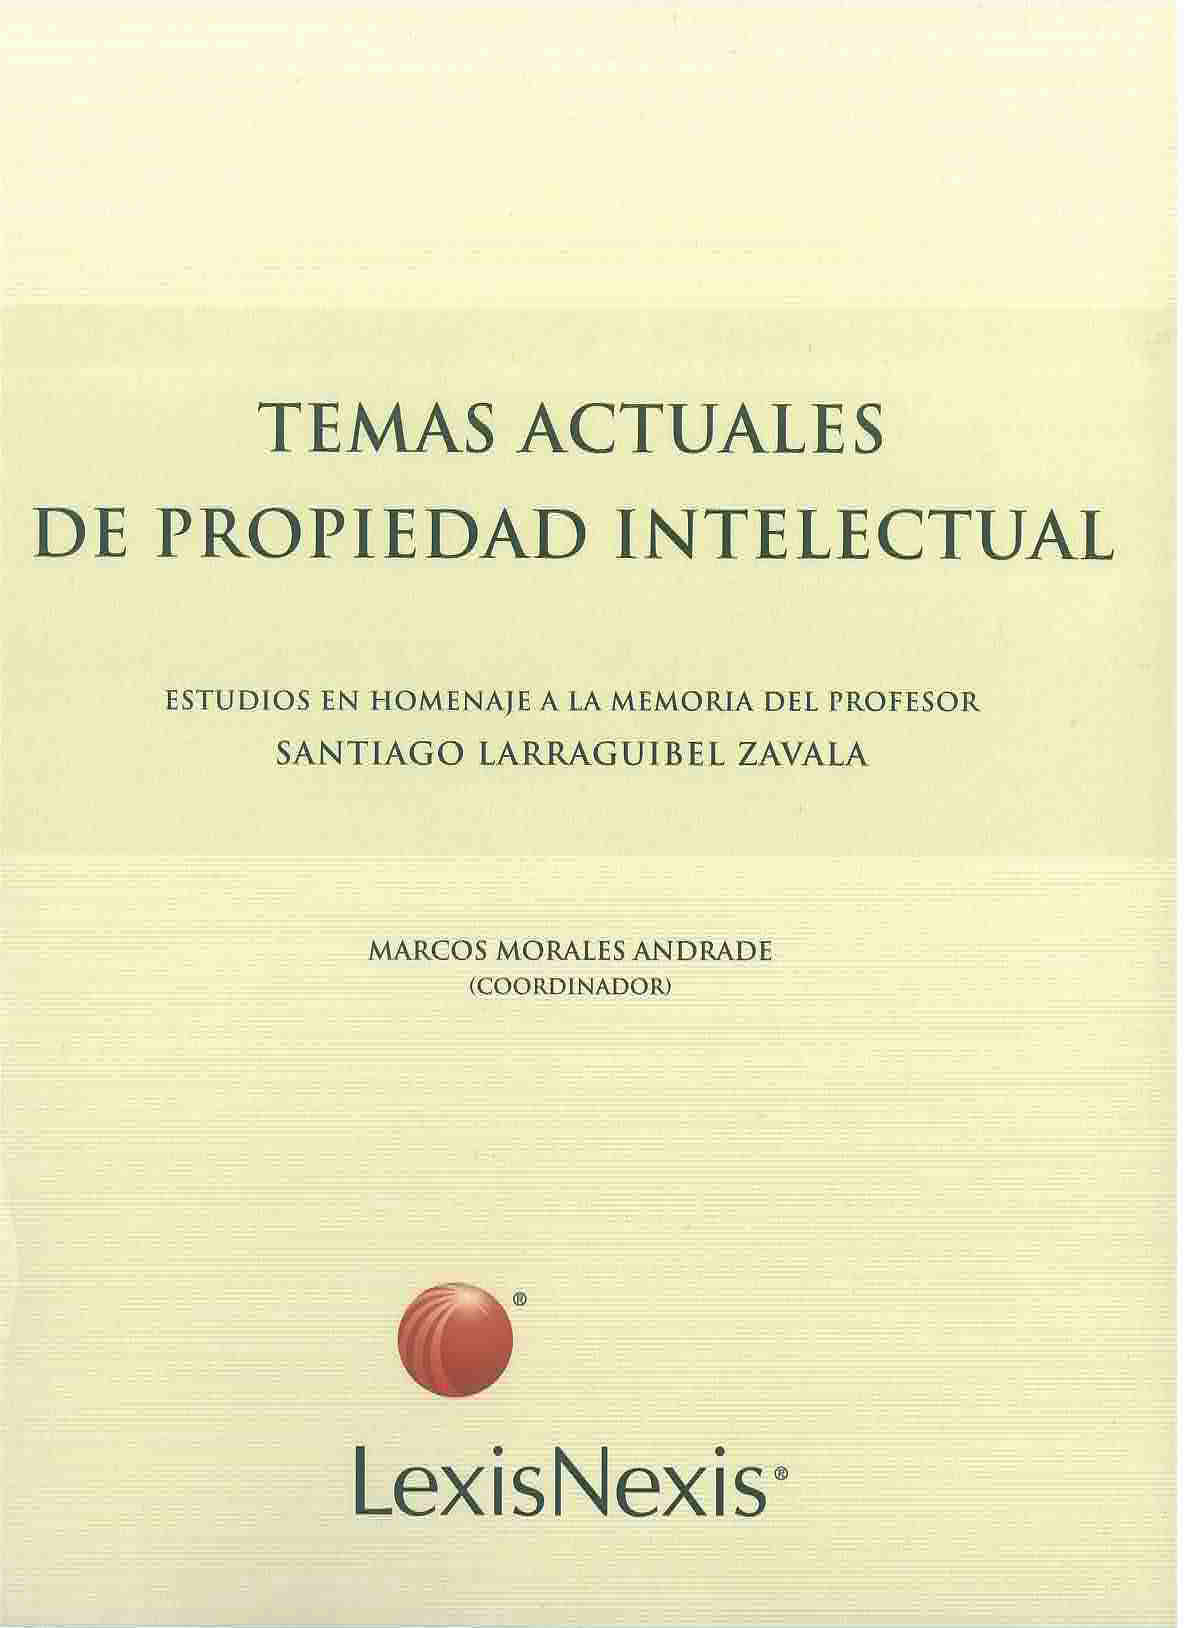 Temas actuales de propiedad intelectual : estudios en homenaje a la memoria del profesor Santiago Larraguibel Zavala